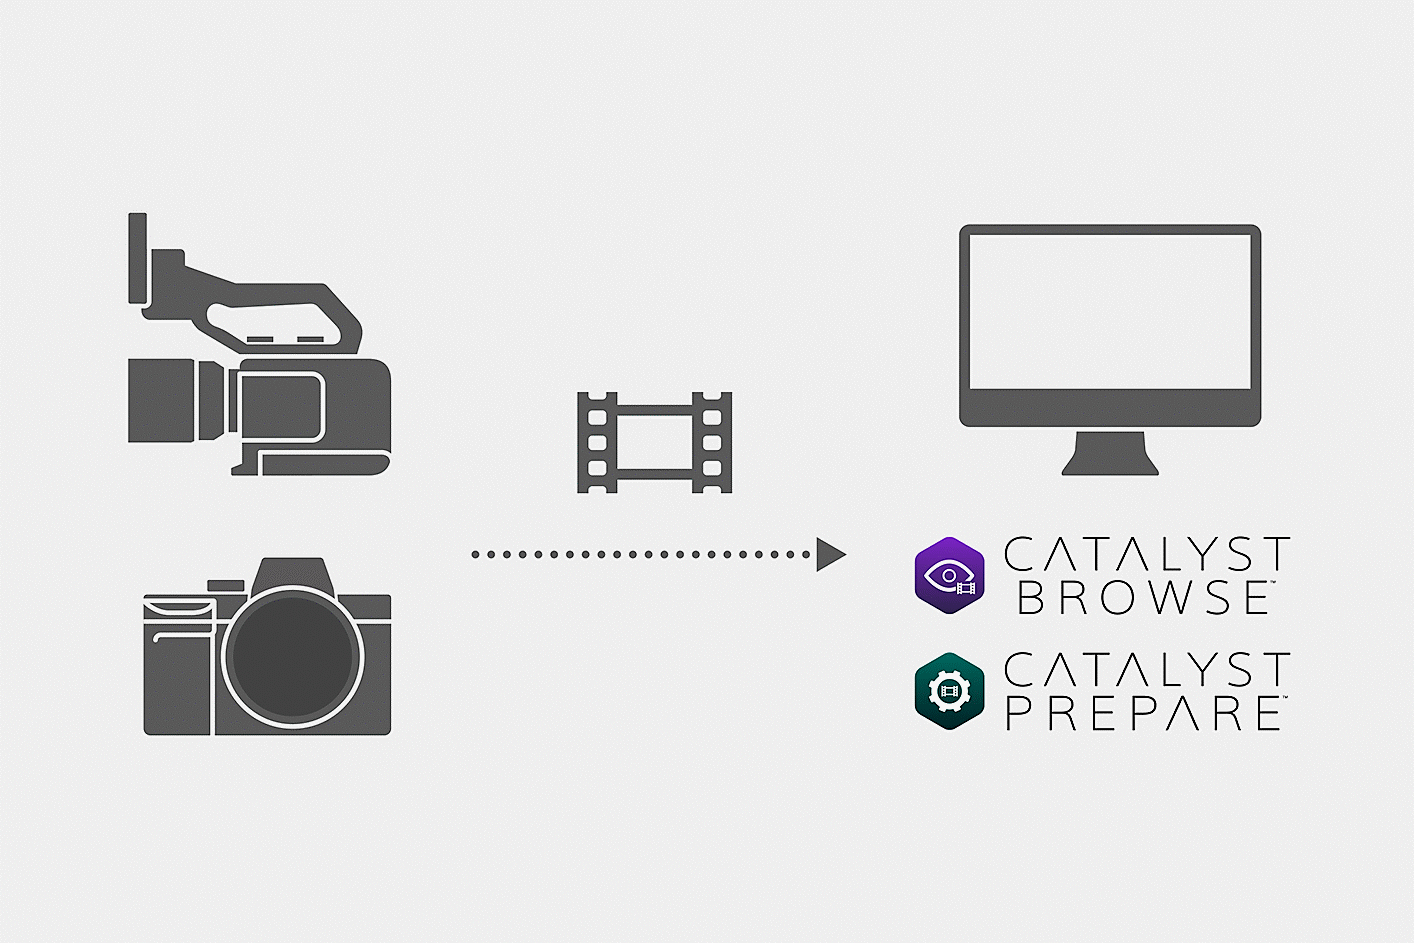 카메라로 촬영한 영상 파일이 Catalyst Browser 또는 Catalyst Prepare에 로드되는 과정을 보여주는 그림